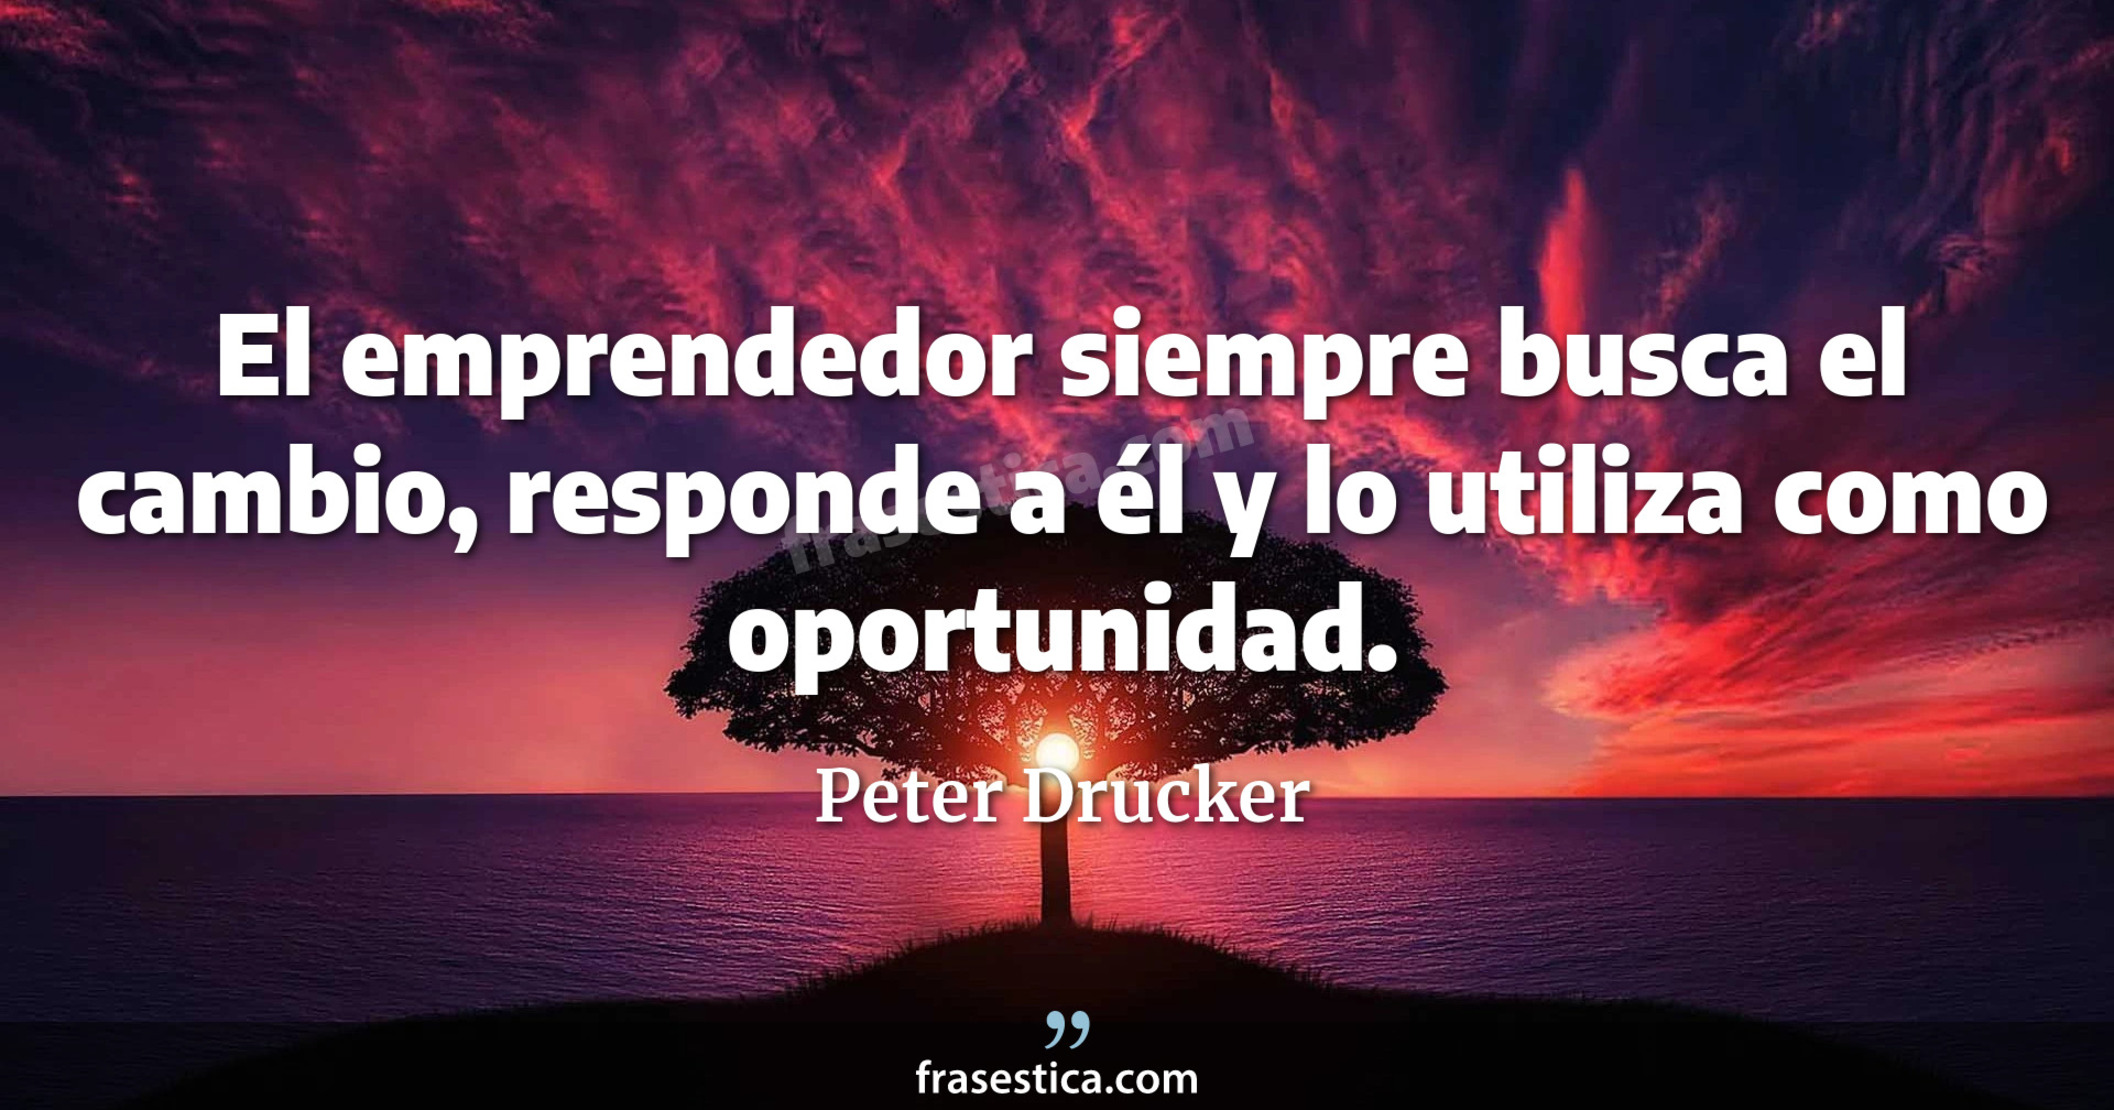 El emprendedor siempre busca el cambio, responde a él y lo utiliza como oportunidad. - Peter Drucker